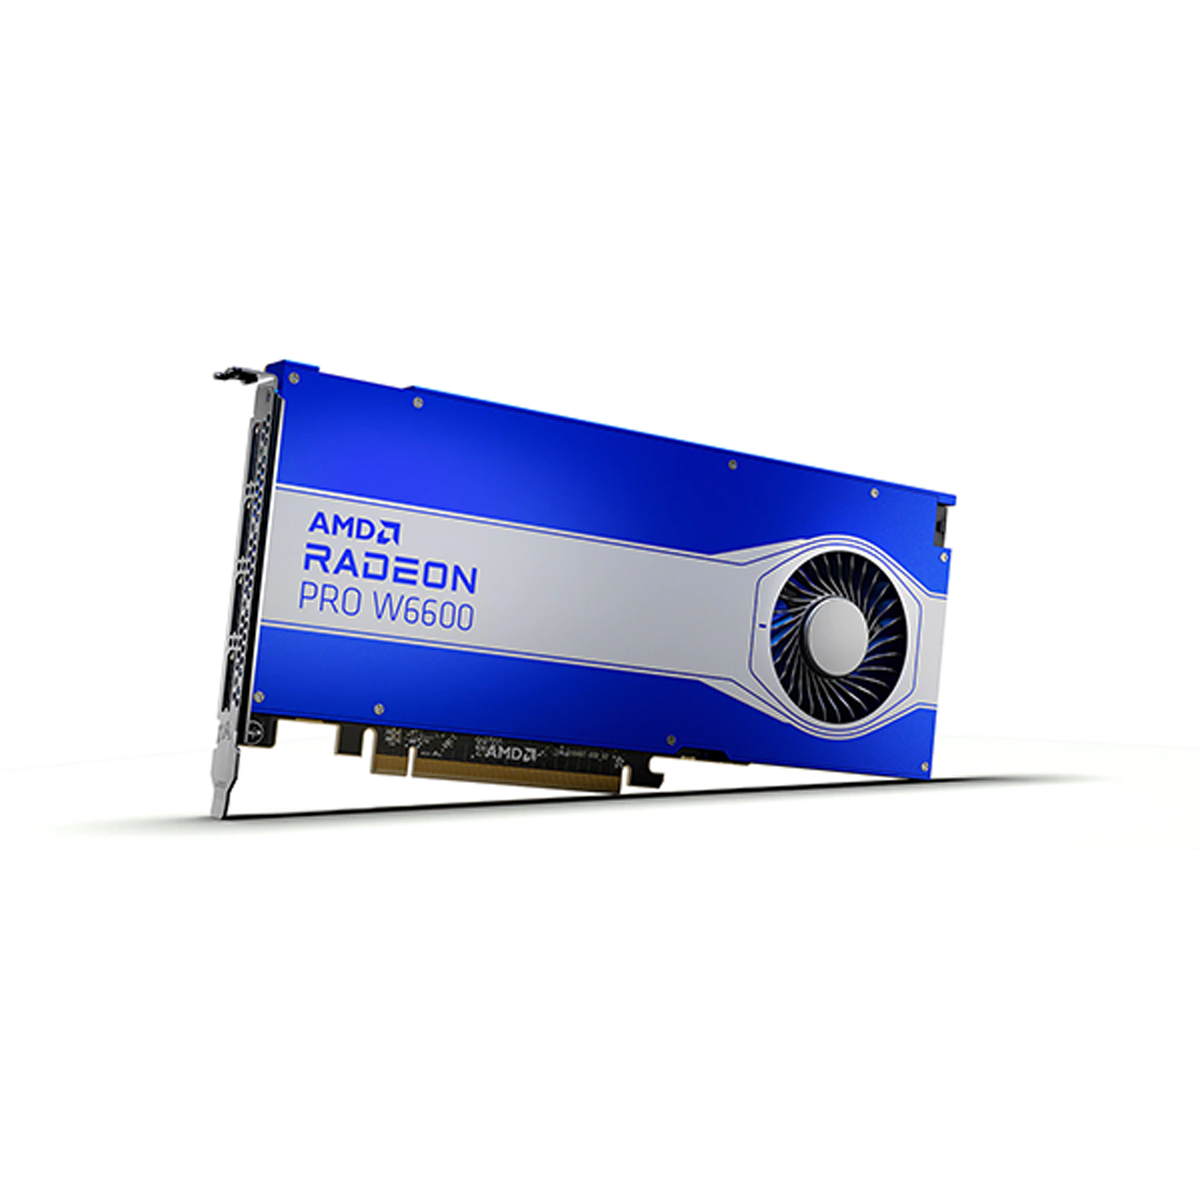 Vga Amd Radeon Pro W6600 8Gddr6 Pcie 4Xdisplayport 128Bit 130W 7Nm 100 506208 - AMD